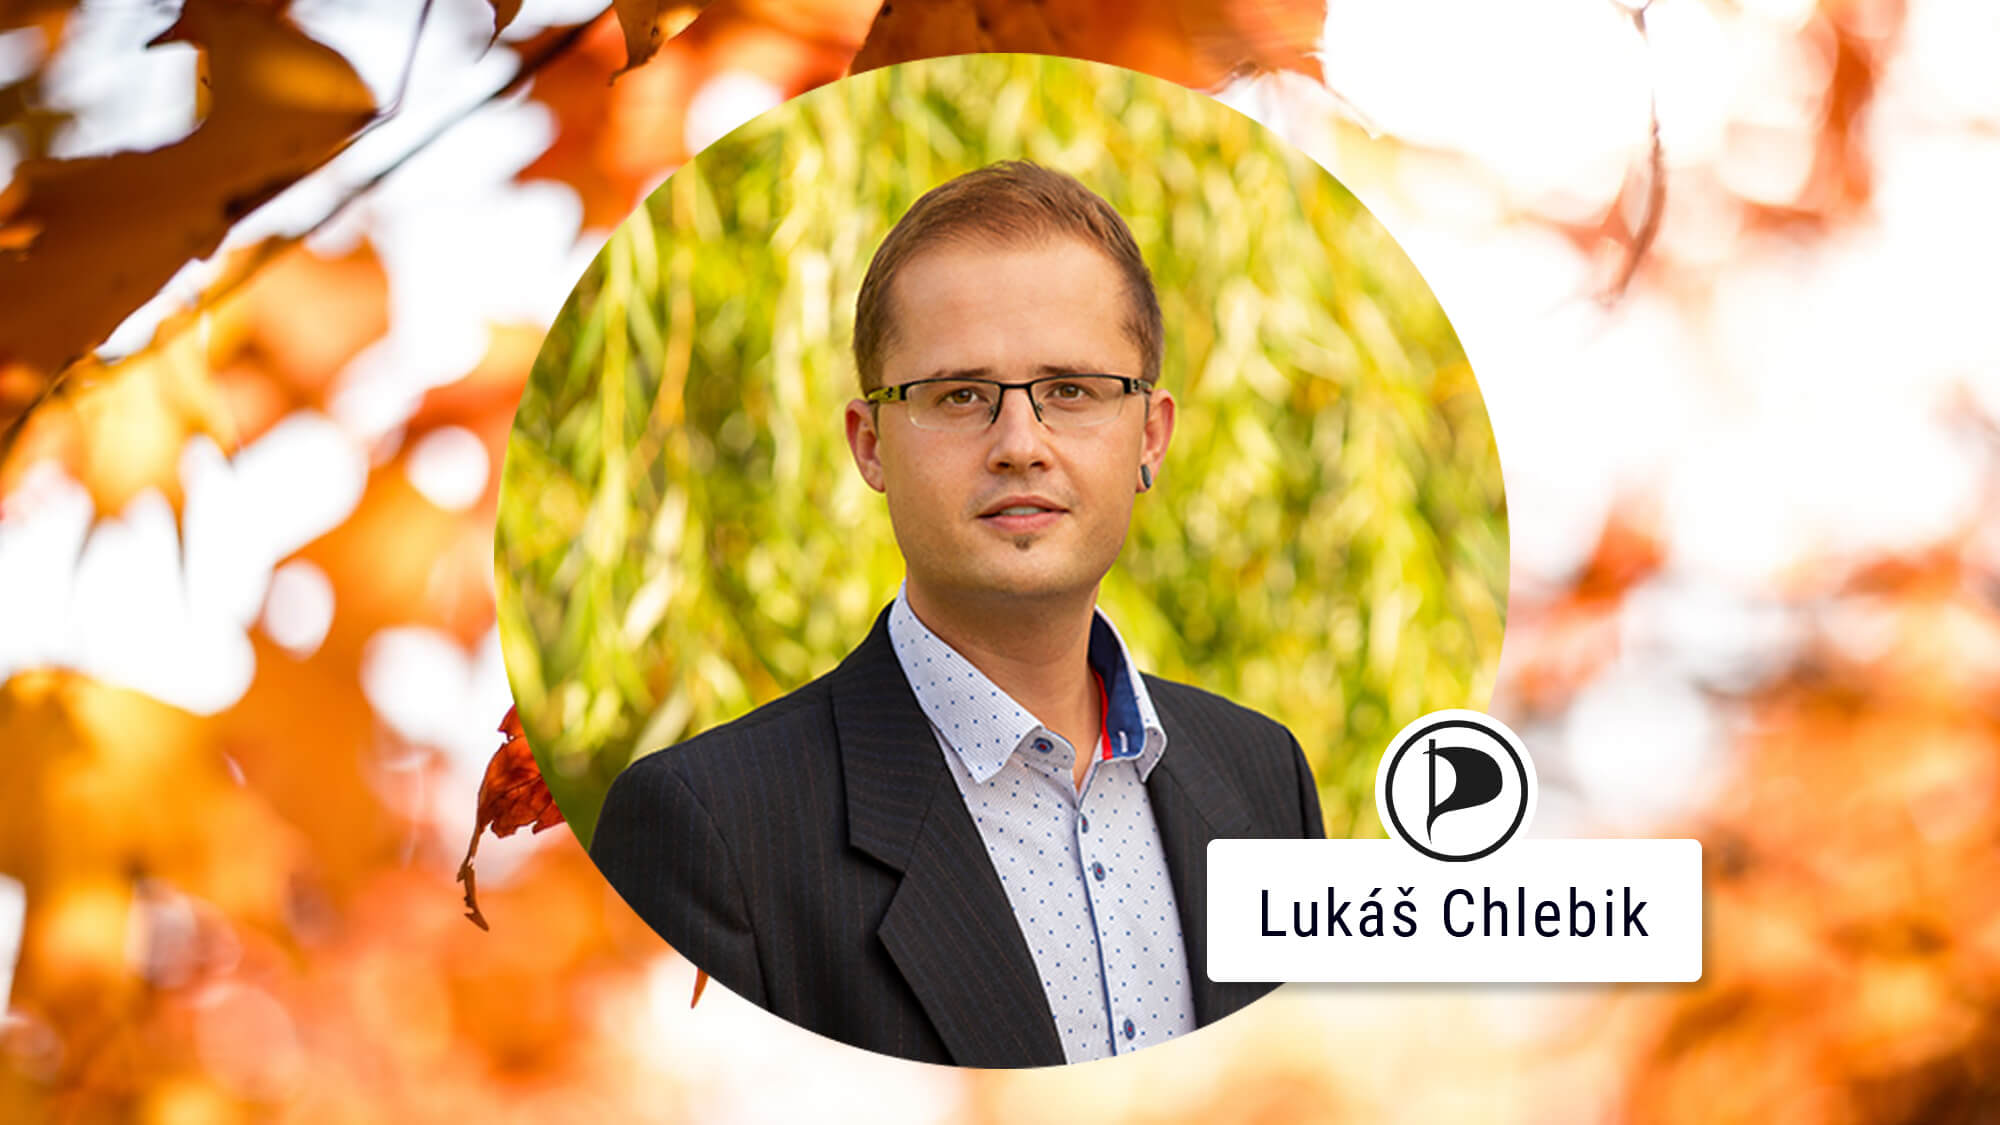 Přečtete si více ze článku Lukáš Chlebik: „Na komise nechodím na kafe, ale proaktivně předkládám návrhy“